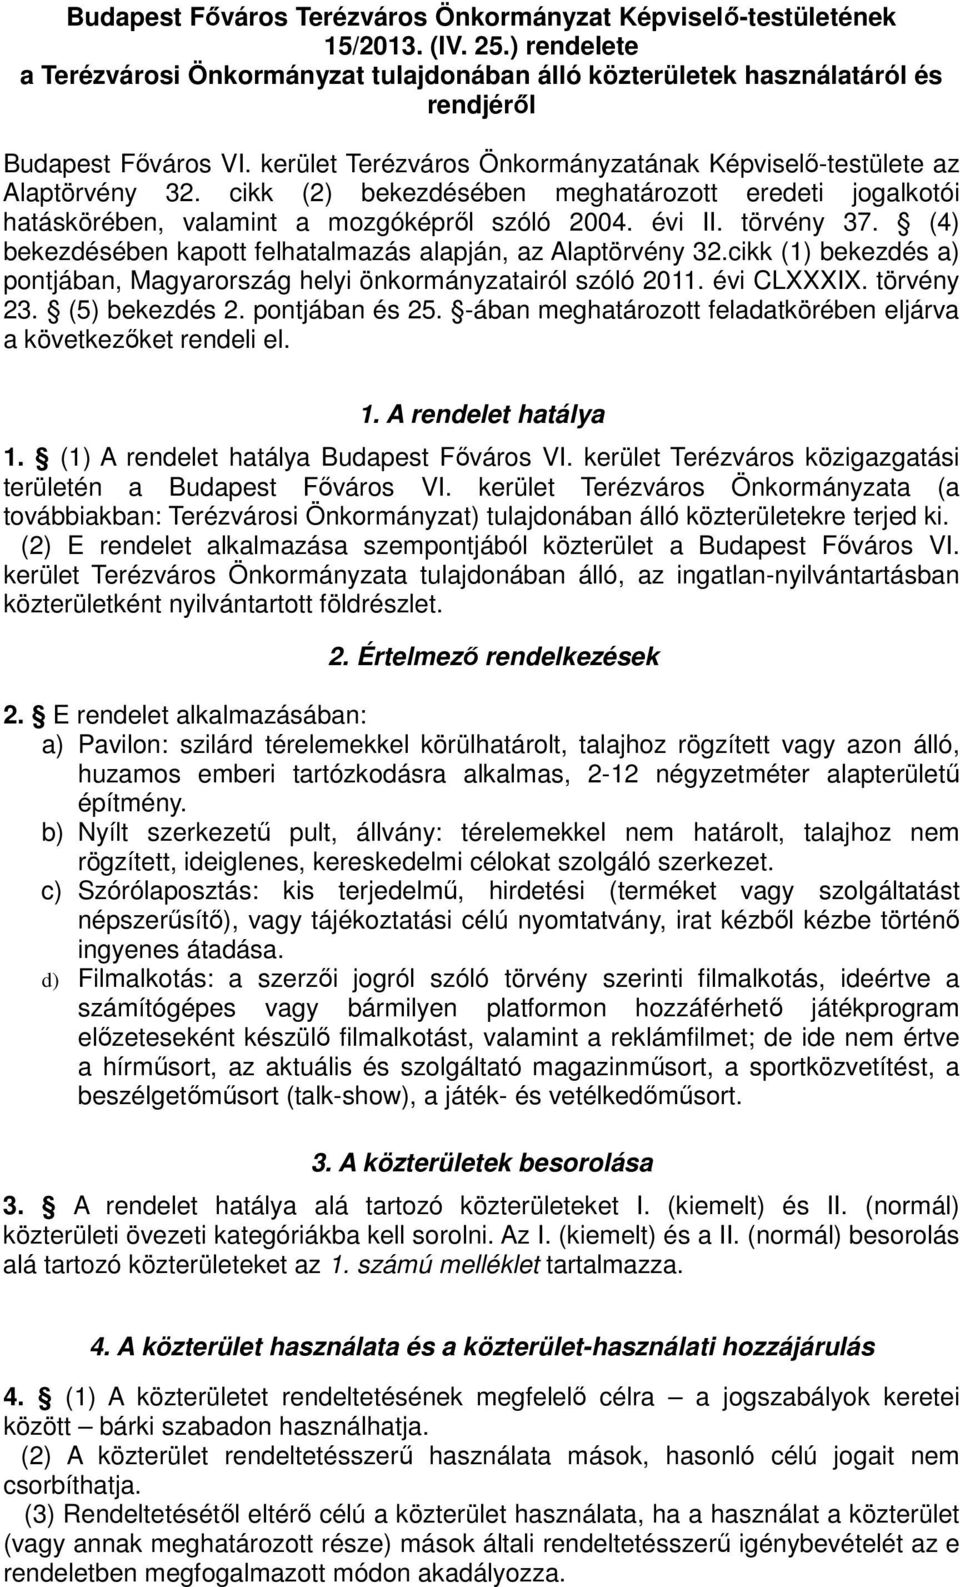 (4) bekezdésében kapott felhatalmazás alapján, az Alaptörvény 32.cikk (1) bekezdés a) pontjában, Magyarország helyi önkormányzatairól szóló 2011. évi CLXXXIX. törvény 23. (5) bekezdés 2.